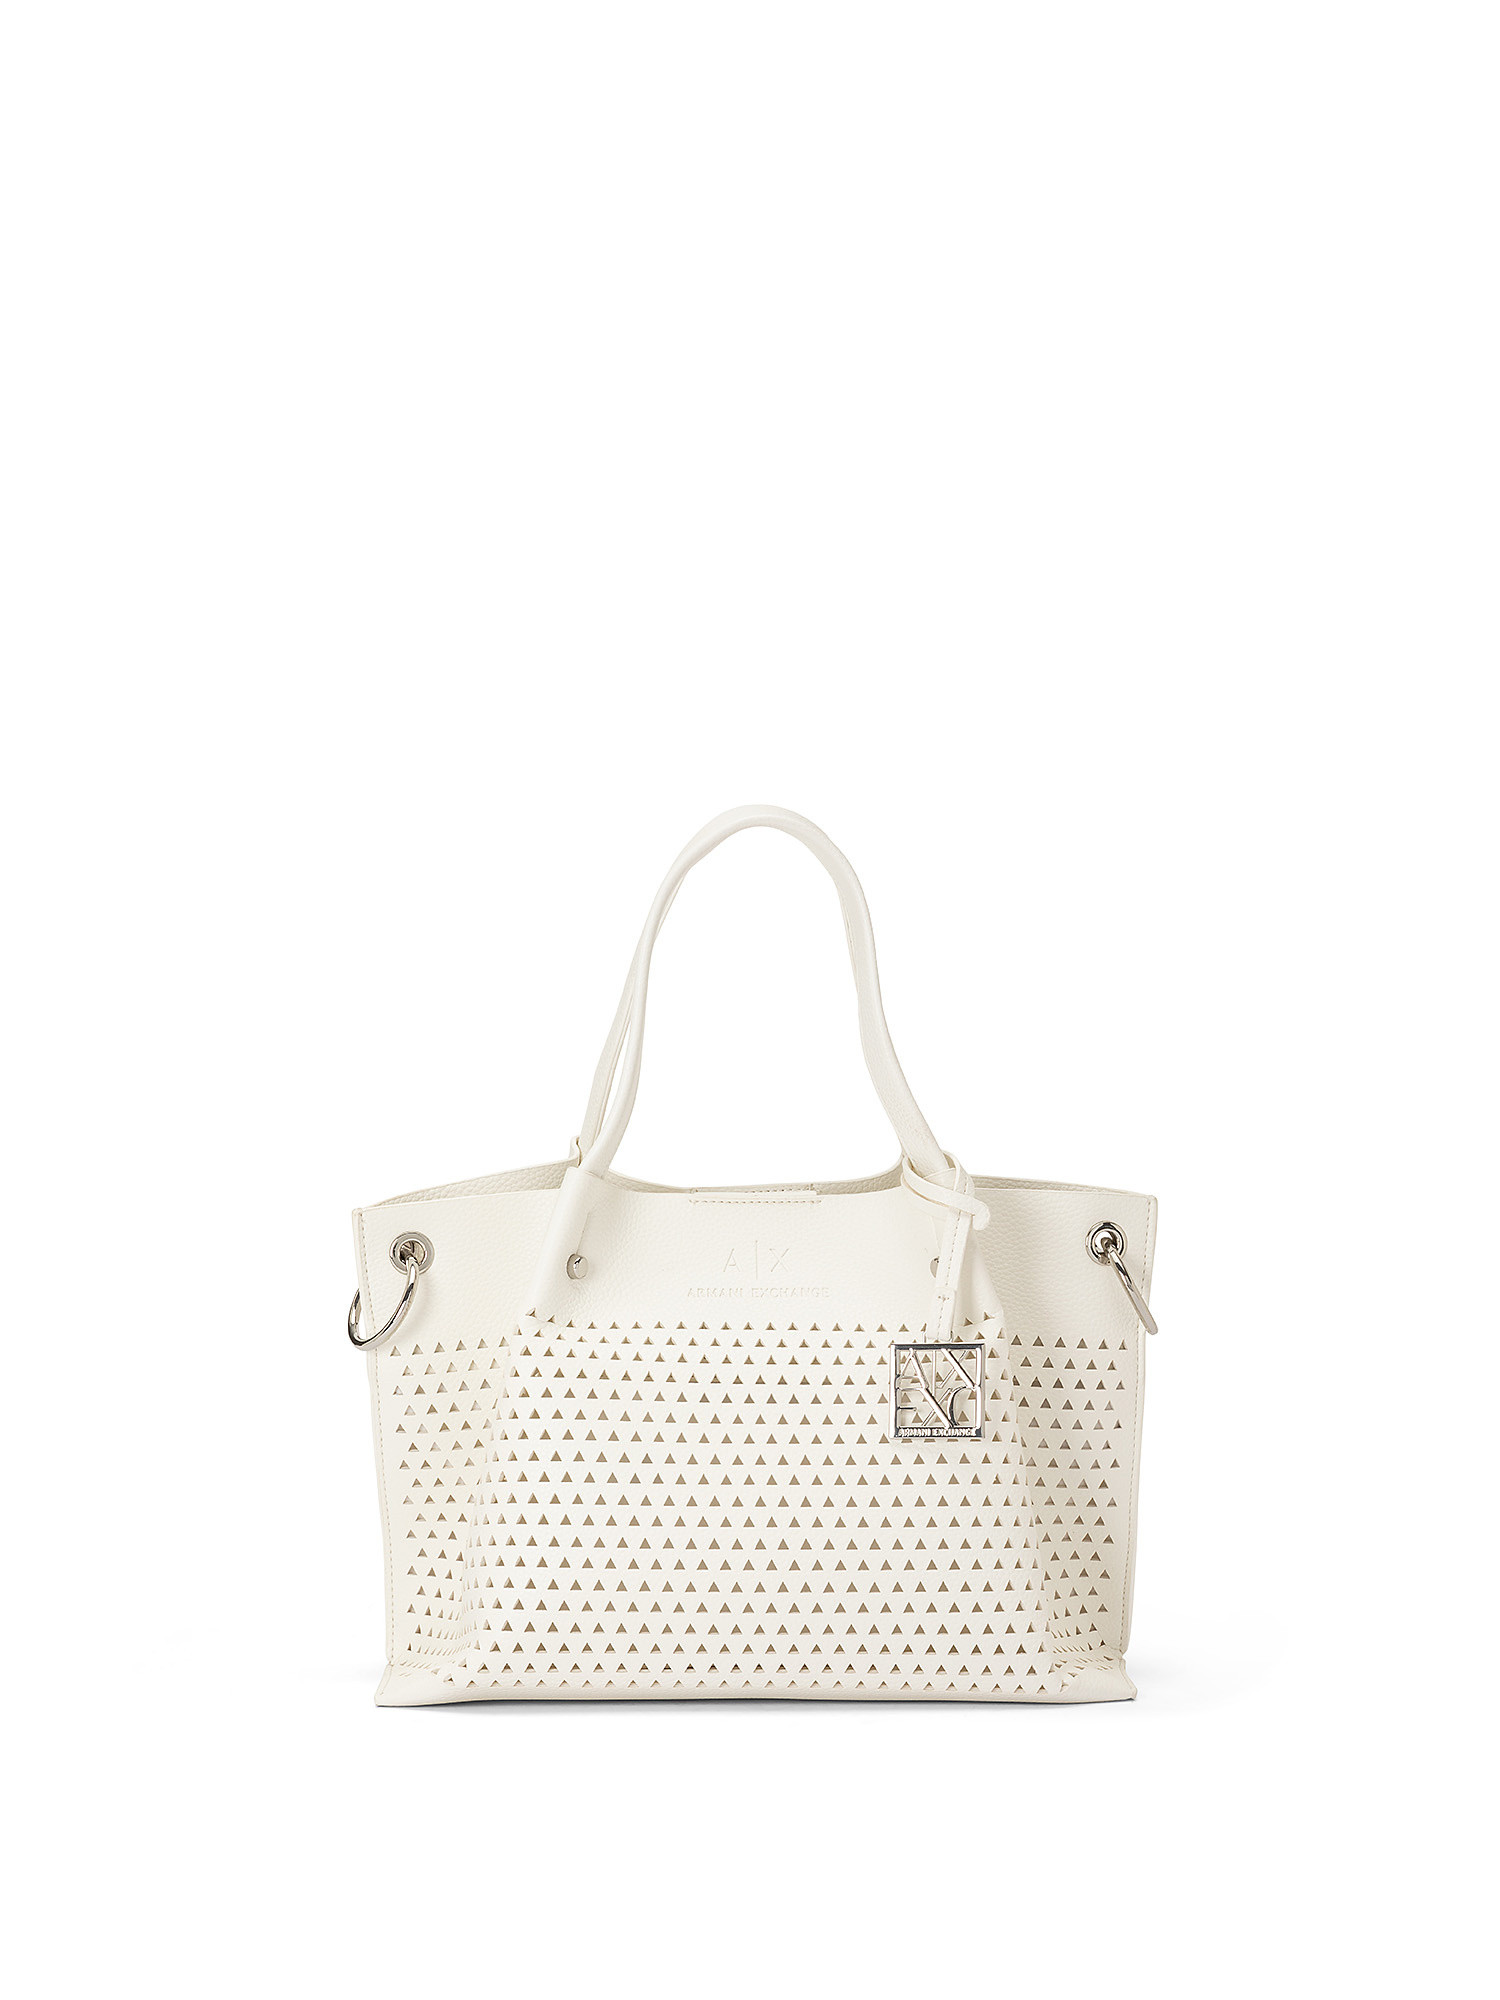 Shopping bag zip top, White, large image number 0